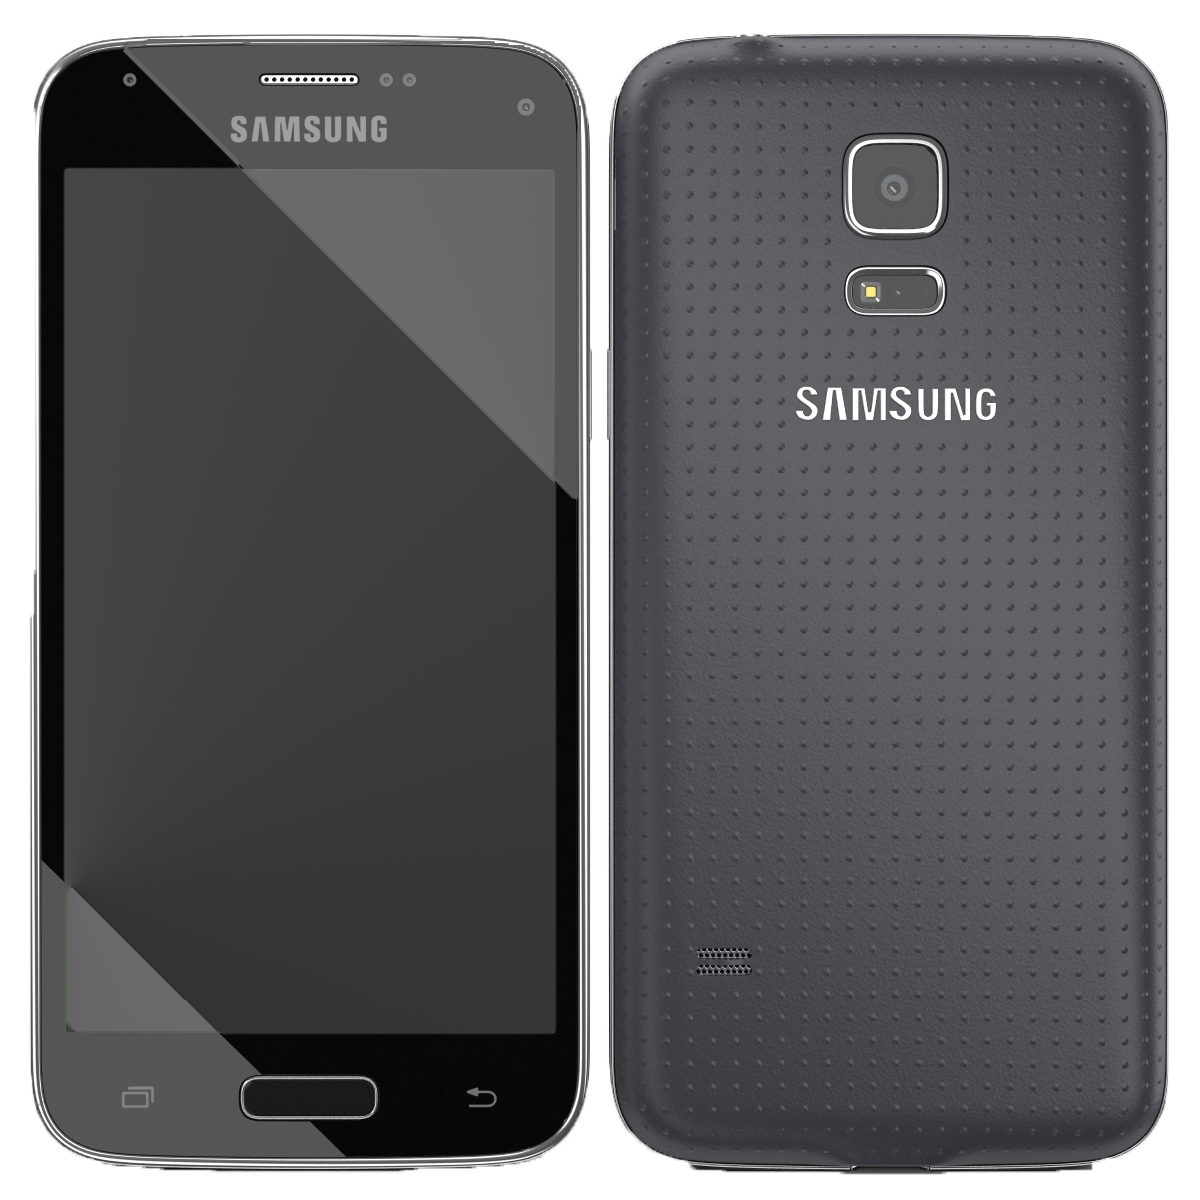 Samsung Galaxy S5 mini G800F schwarz - Ohne Vertrag